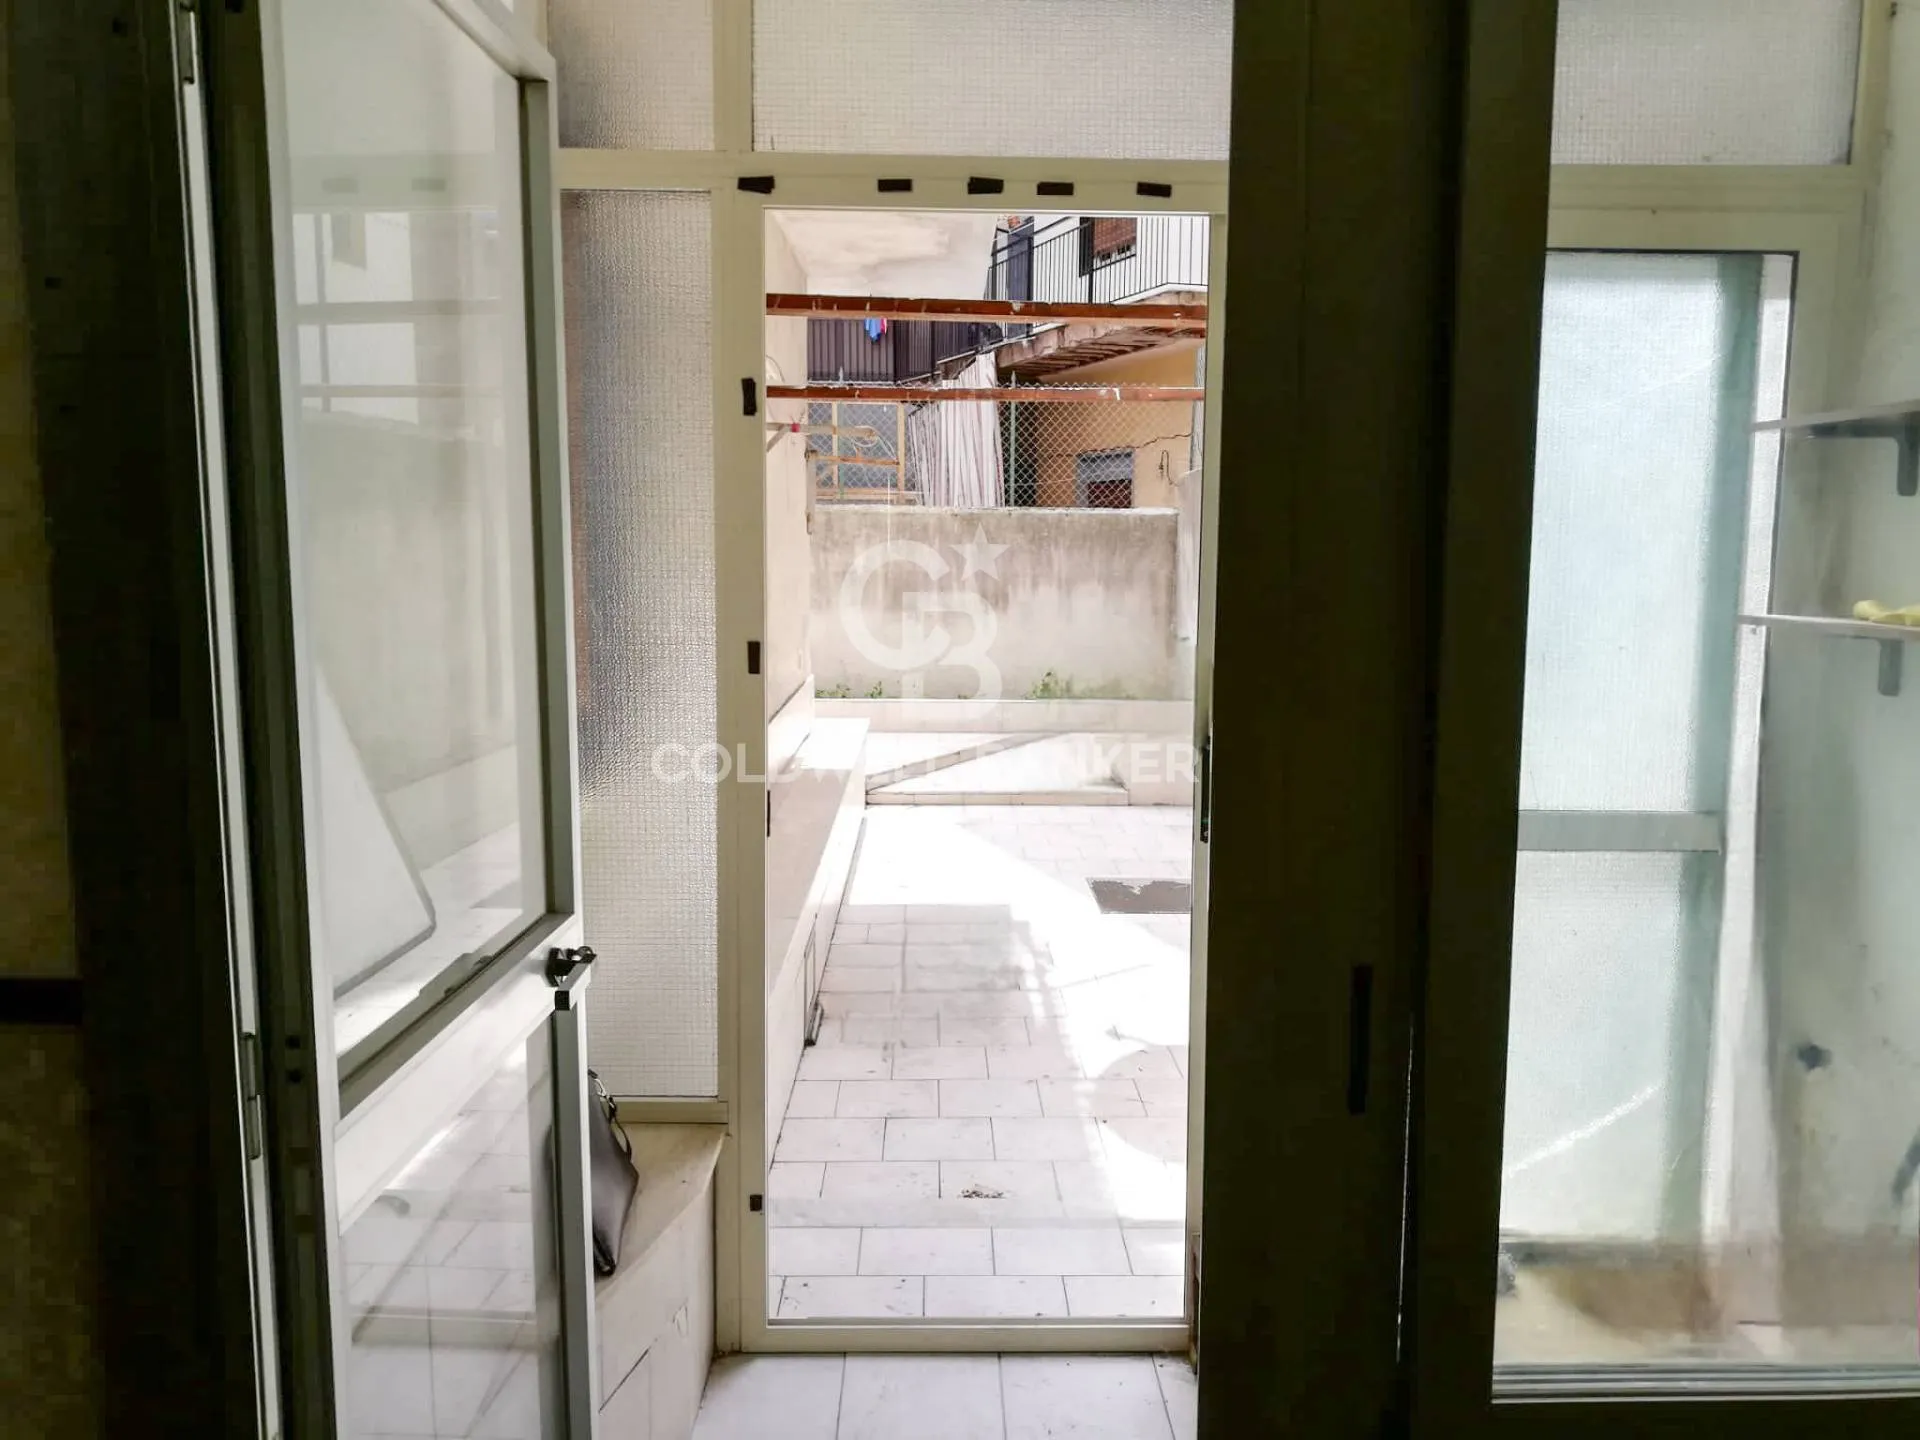 Immagine per Appartamento in vendita a Sant'Agata li Battiati Via scala di betta